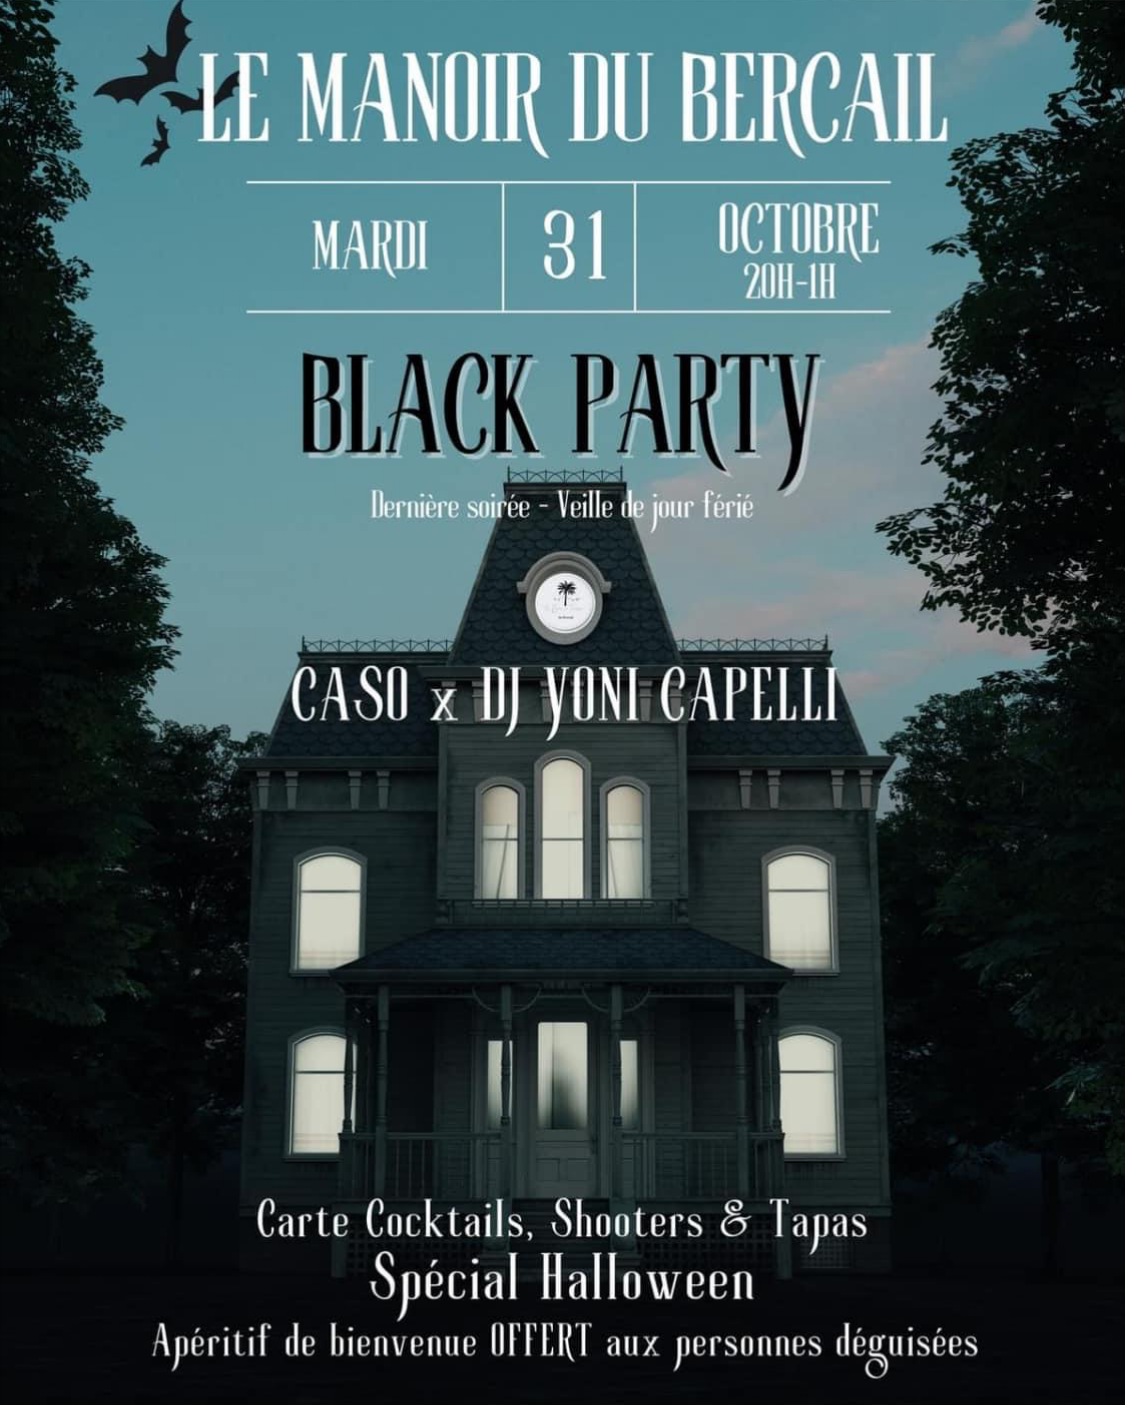 Mardi 31 octobre : Black Party au Manoir du Bercail